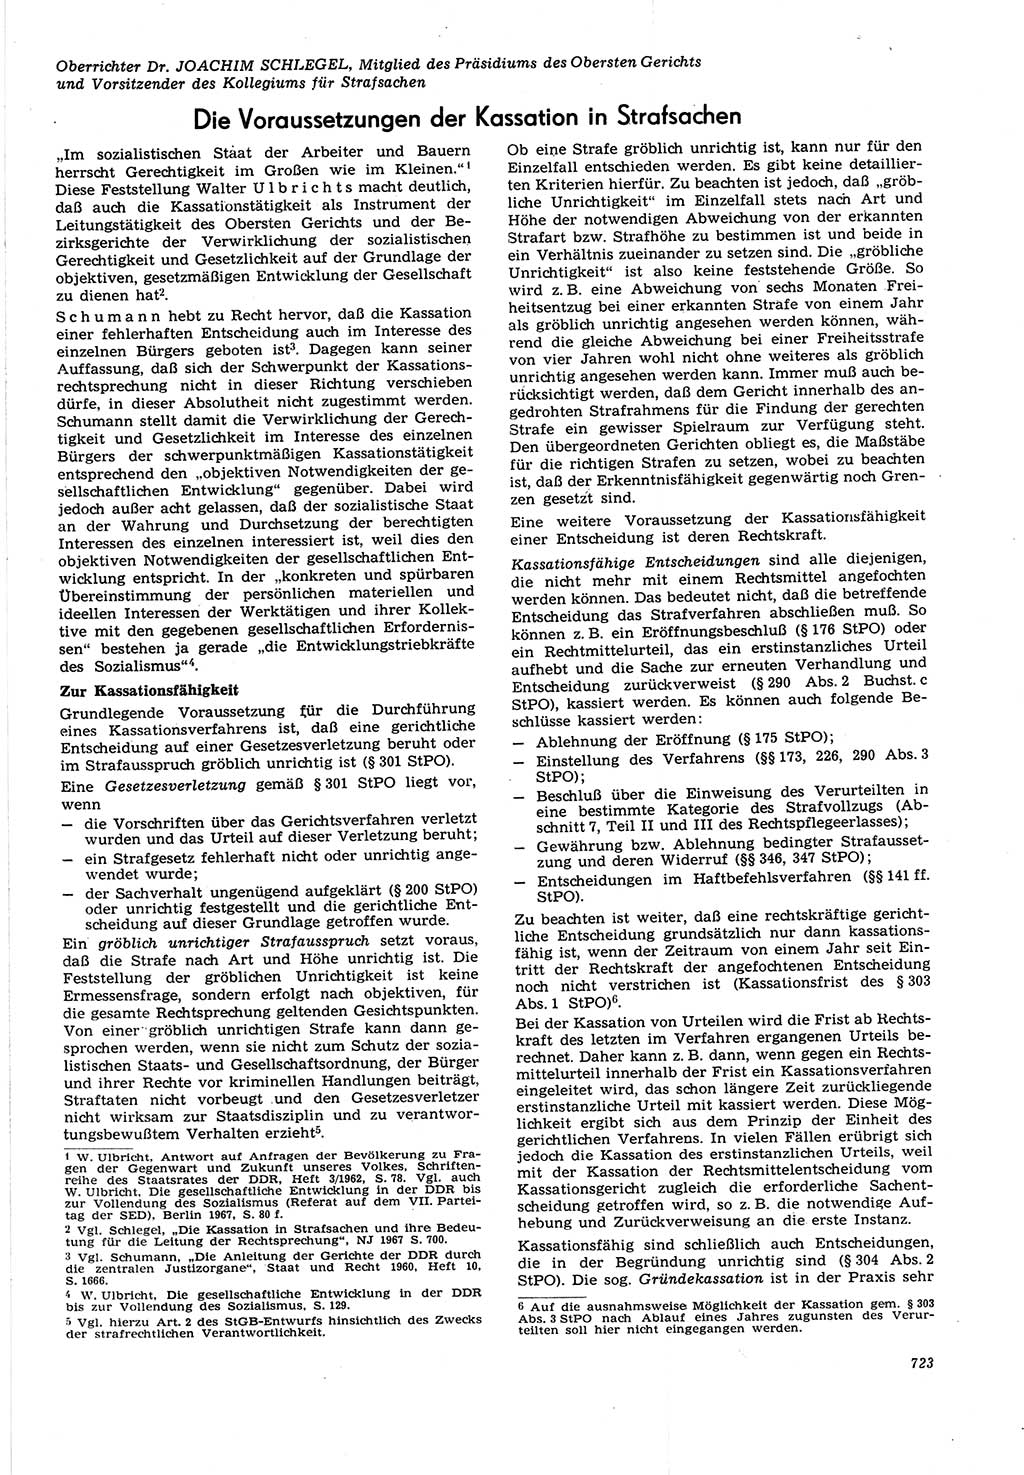 Neue Justiz (NJ), Zeitschrift für Recht und Rechtswissenschaft [Deutsche Demokratische Republik (DDR)], 21. Jahrgang 1967, Seite 723 (NJ DDR 1967, S. 723)